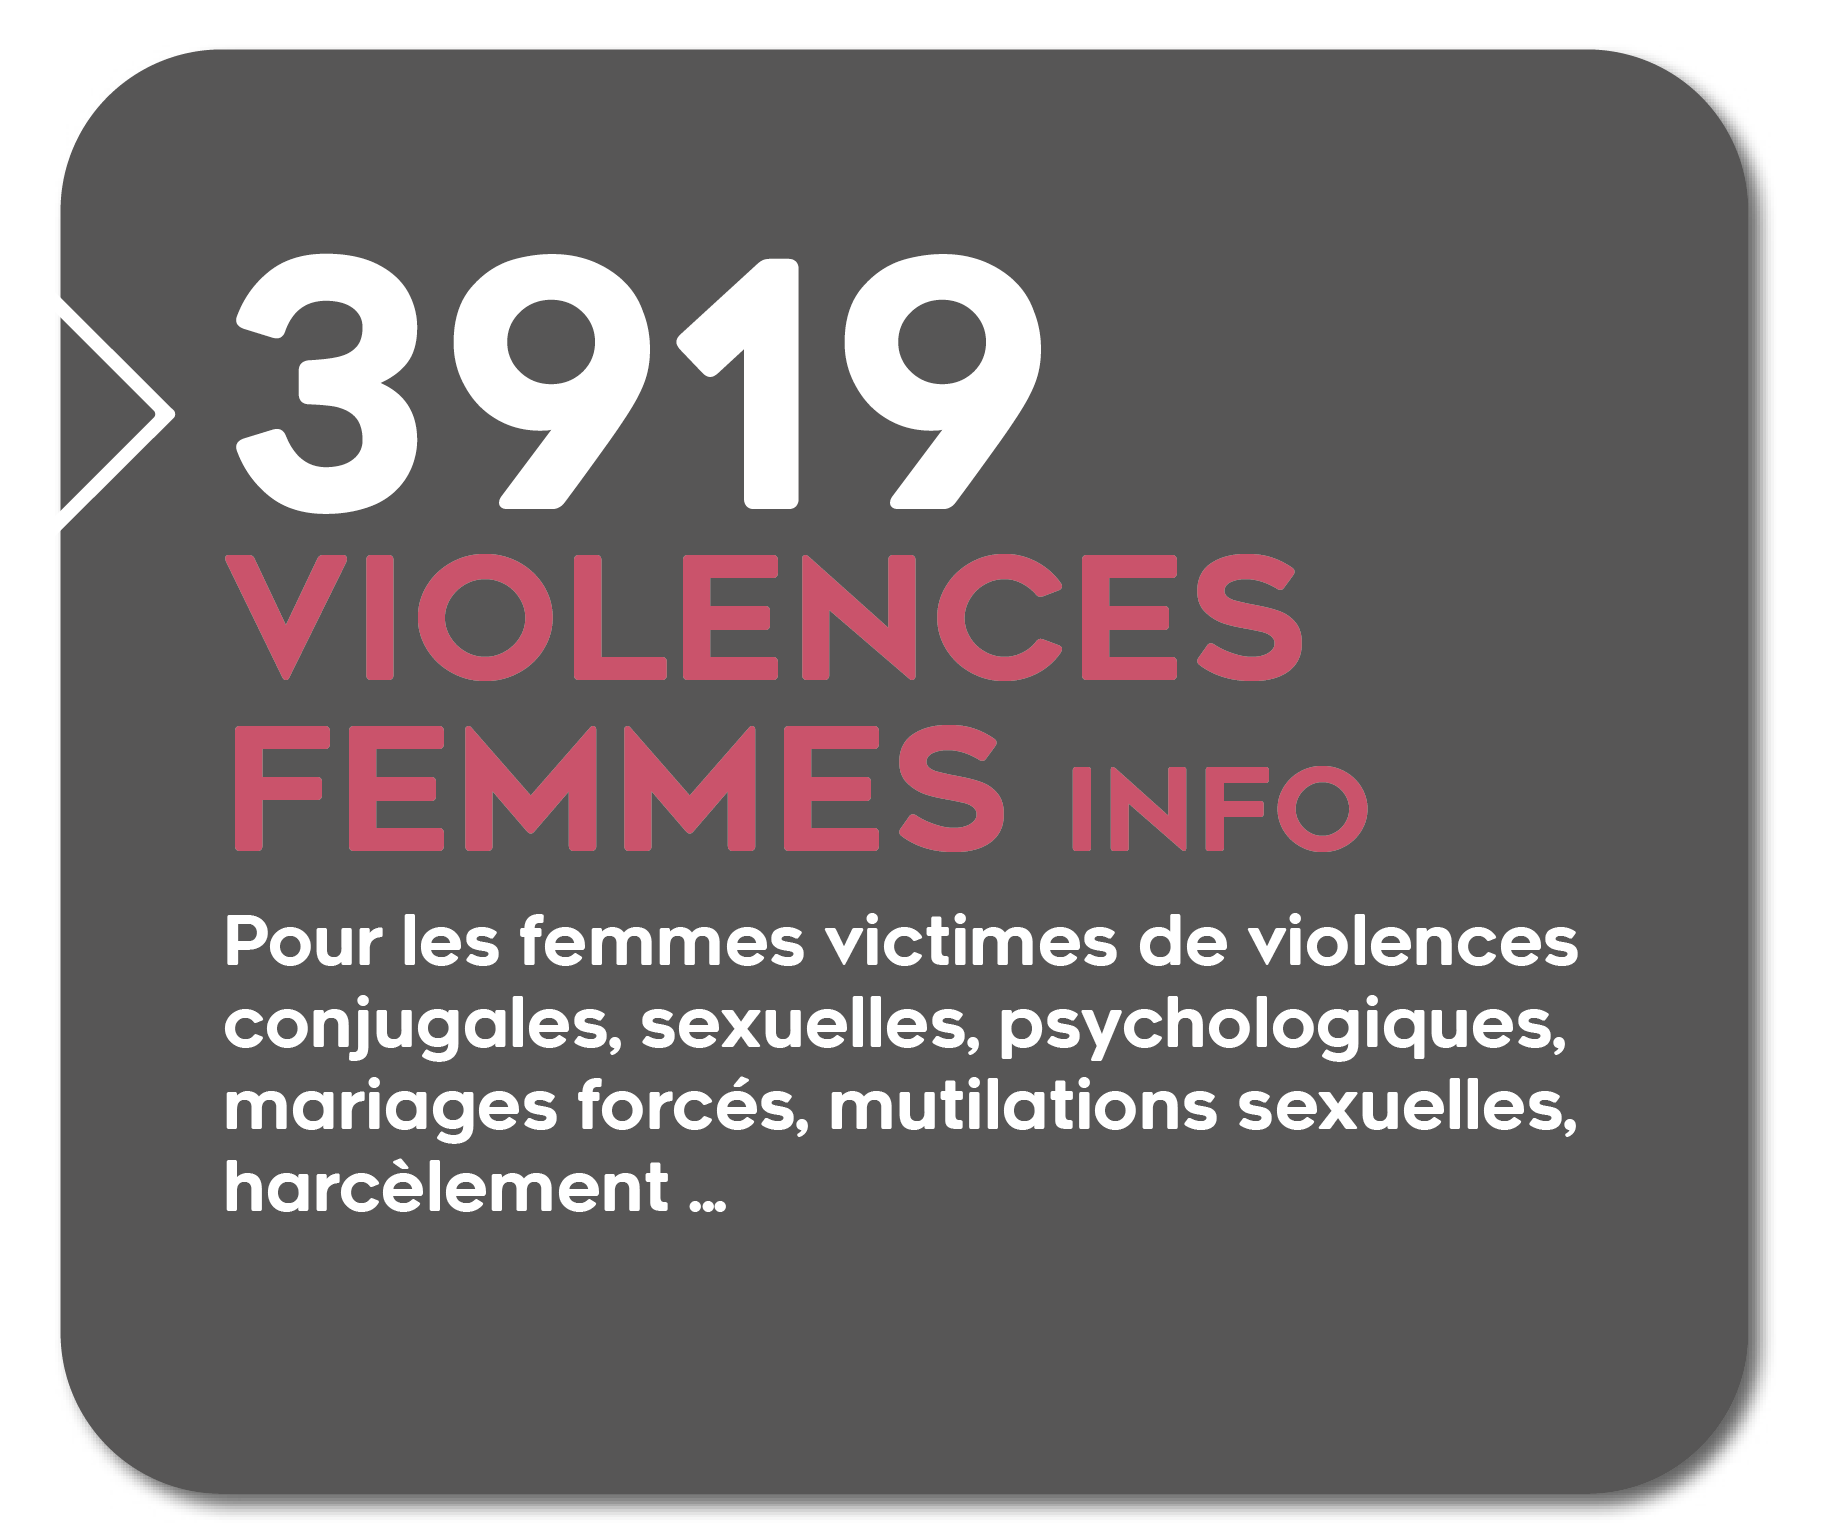 3919 Violences femmes